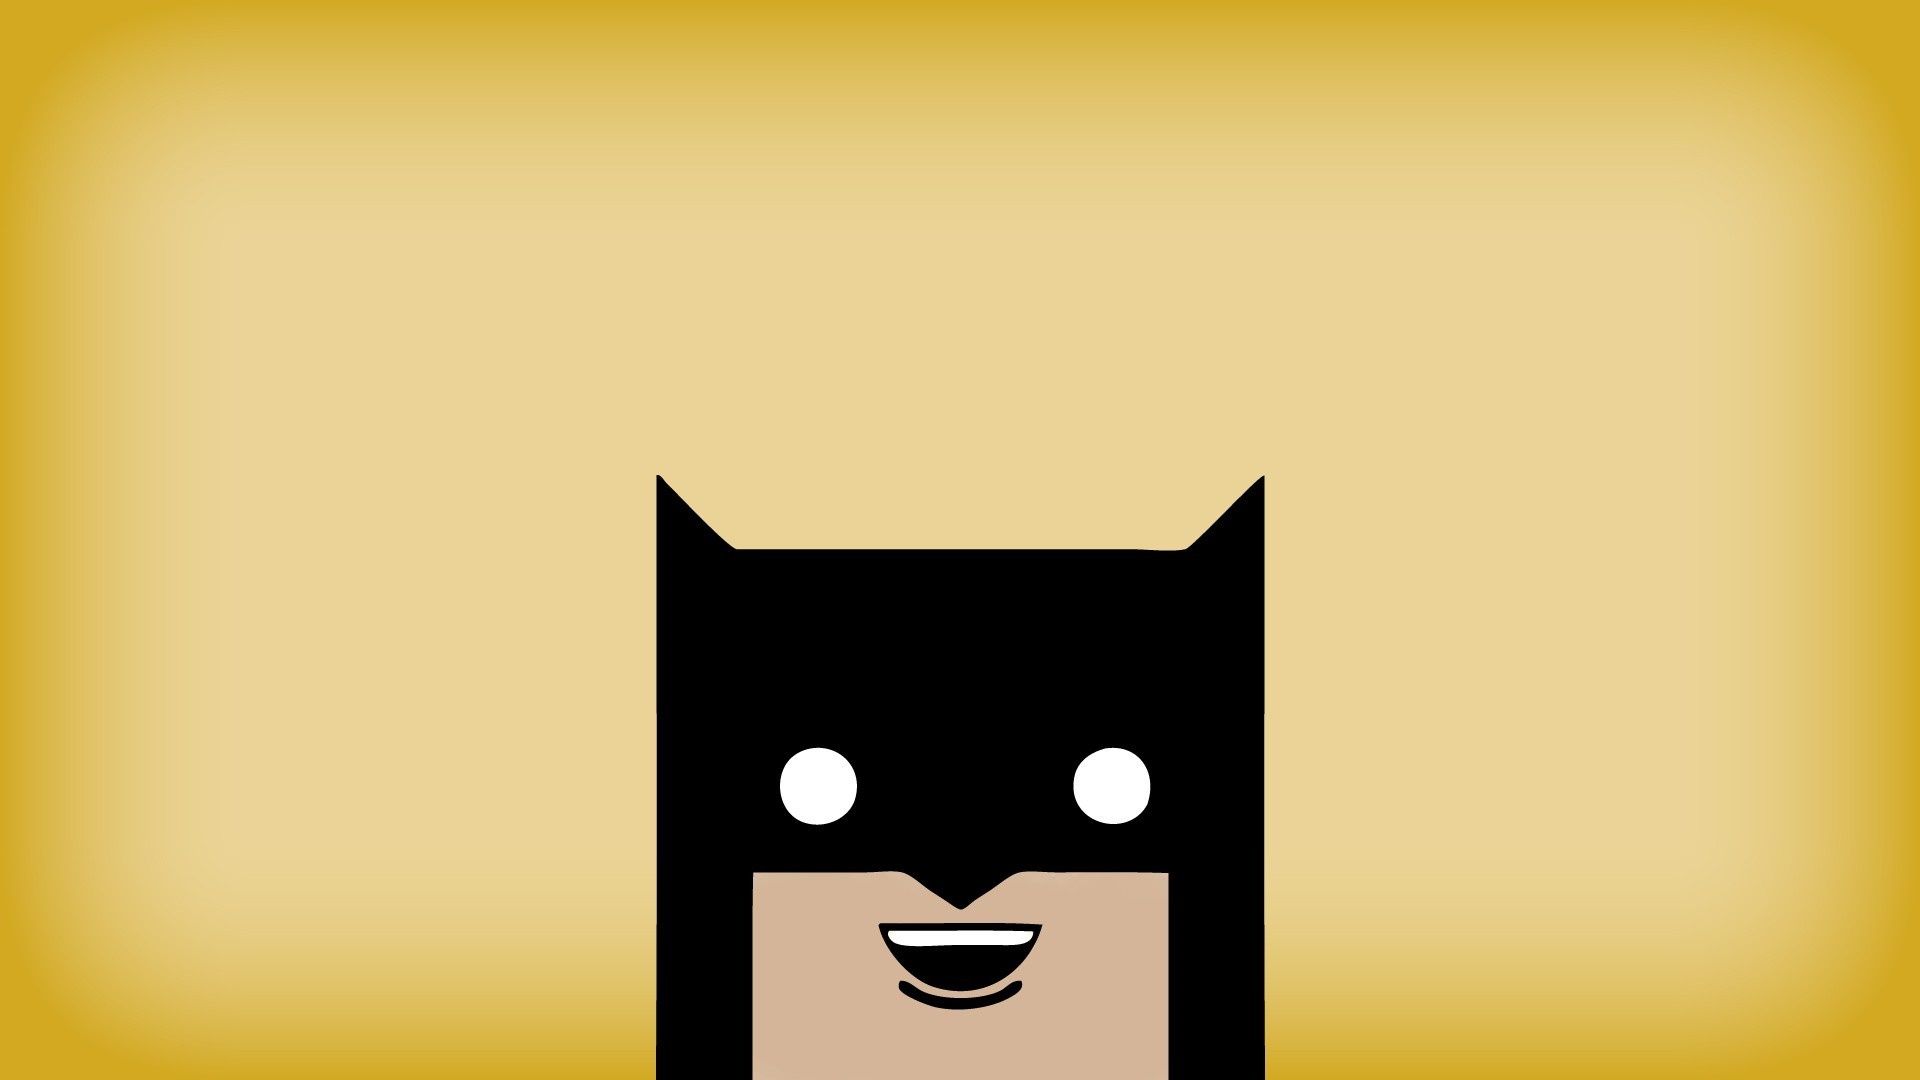 illustration, cat, minimalism, Batman, text, logo, yellow, cartoon, comics, Black Cat, computer wallpaper, font Gallery HD Wallpaper